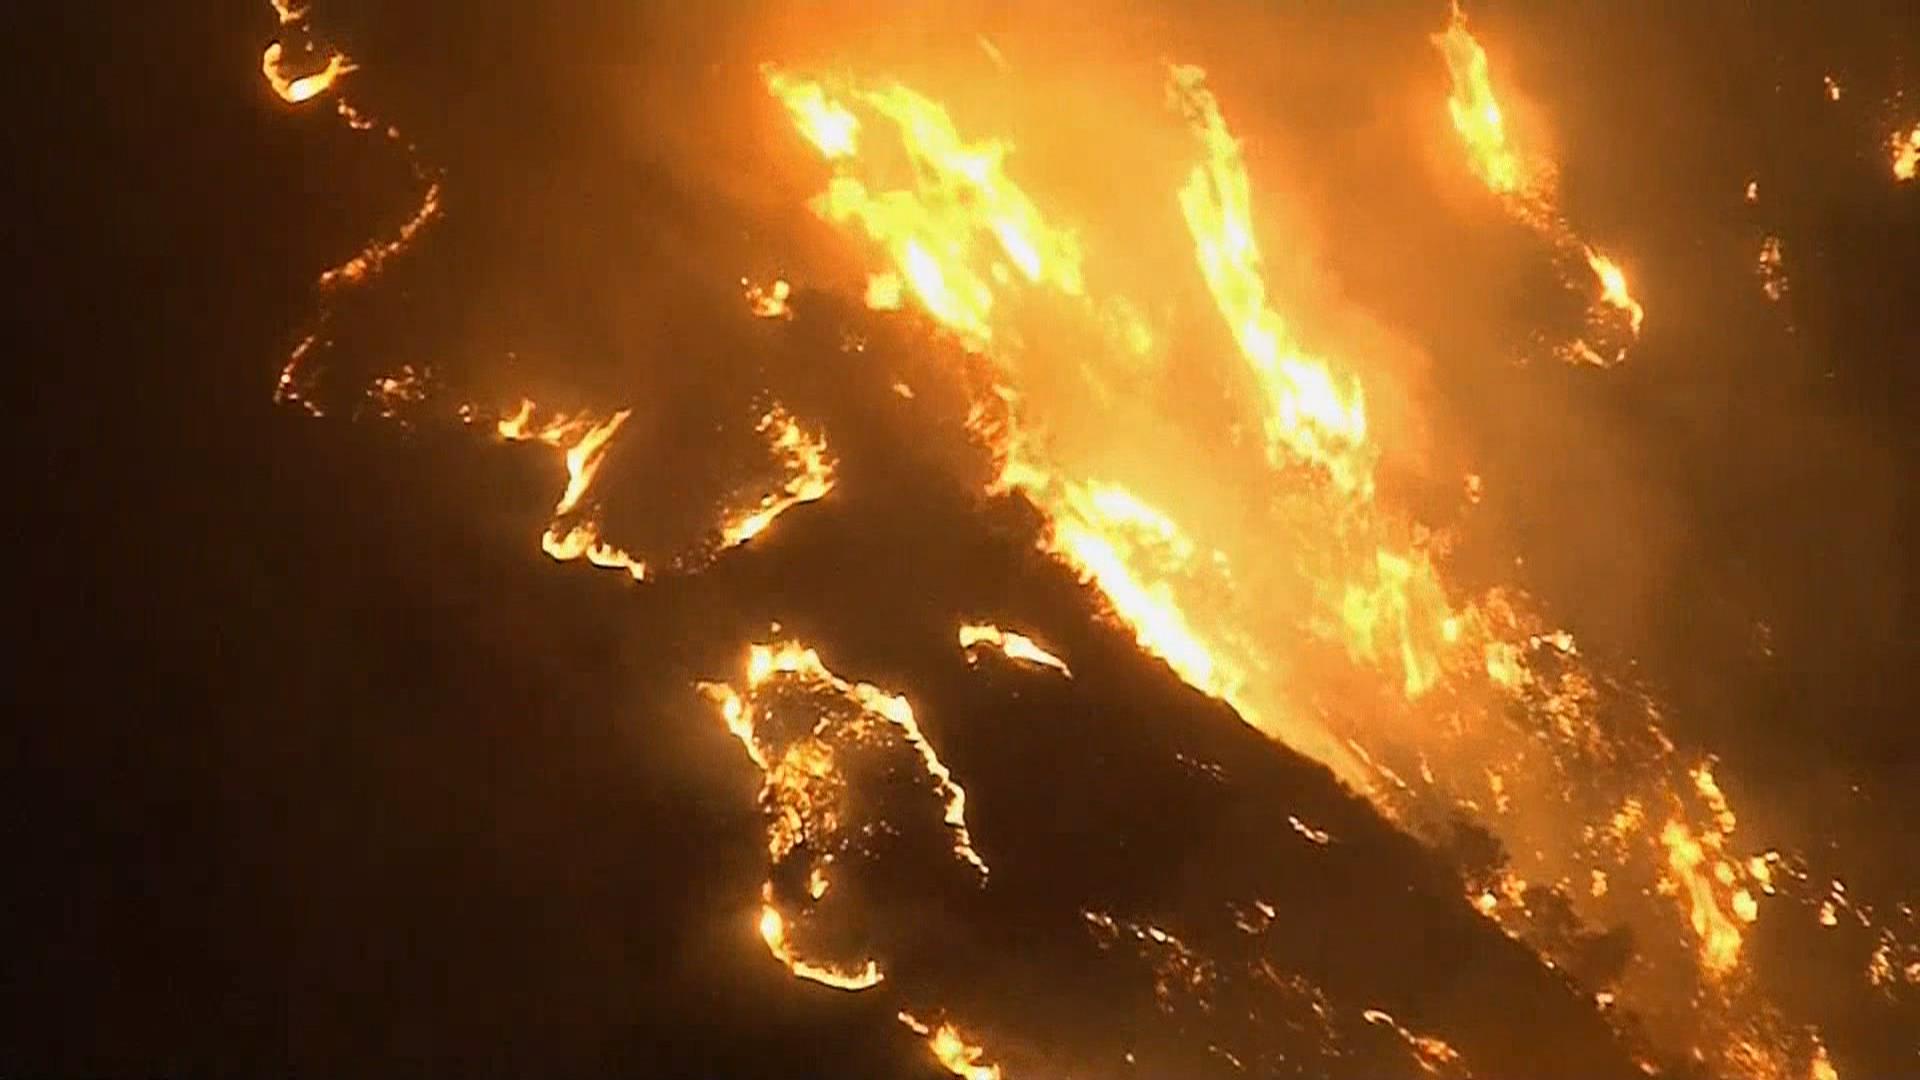 Canyon Fire forces hundreds to evacuate near Anaheim - TODAY.com